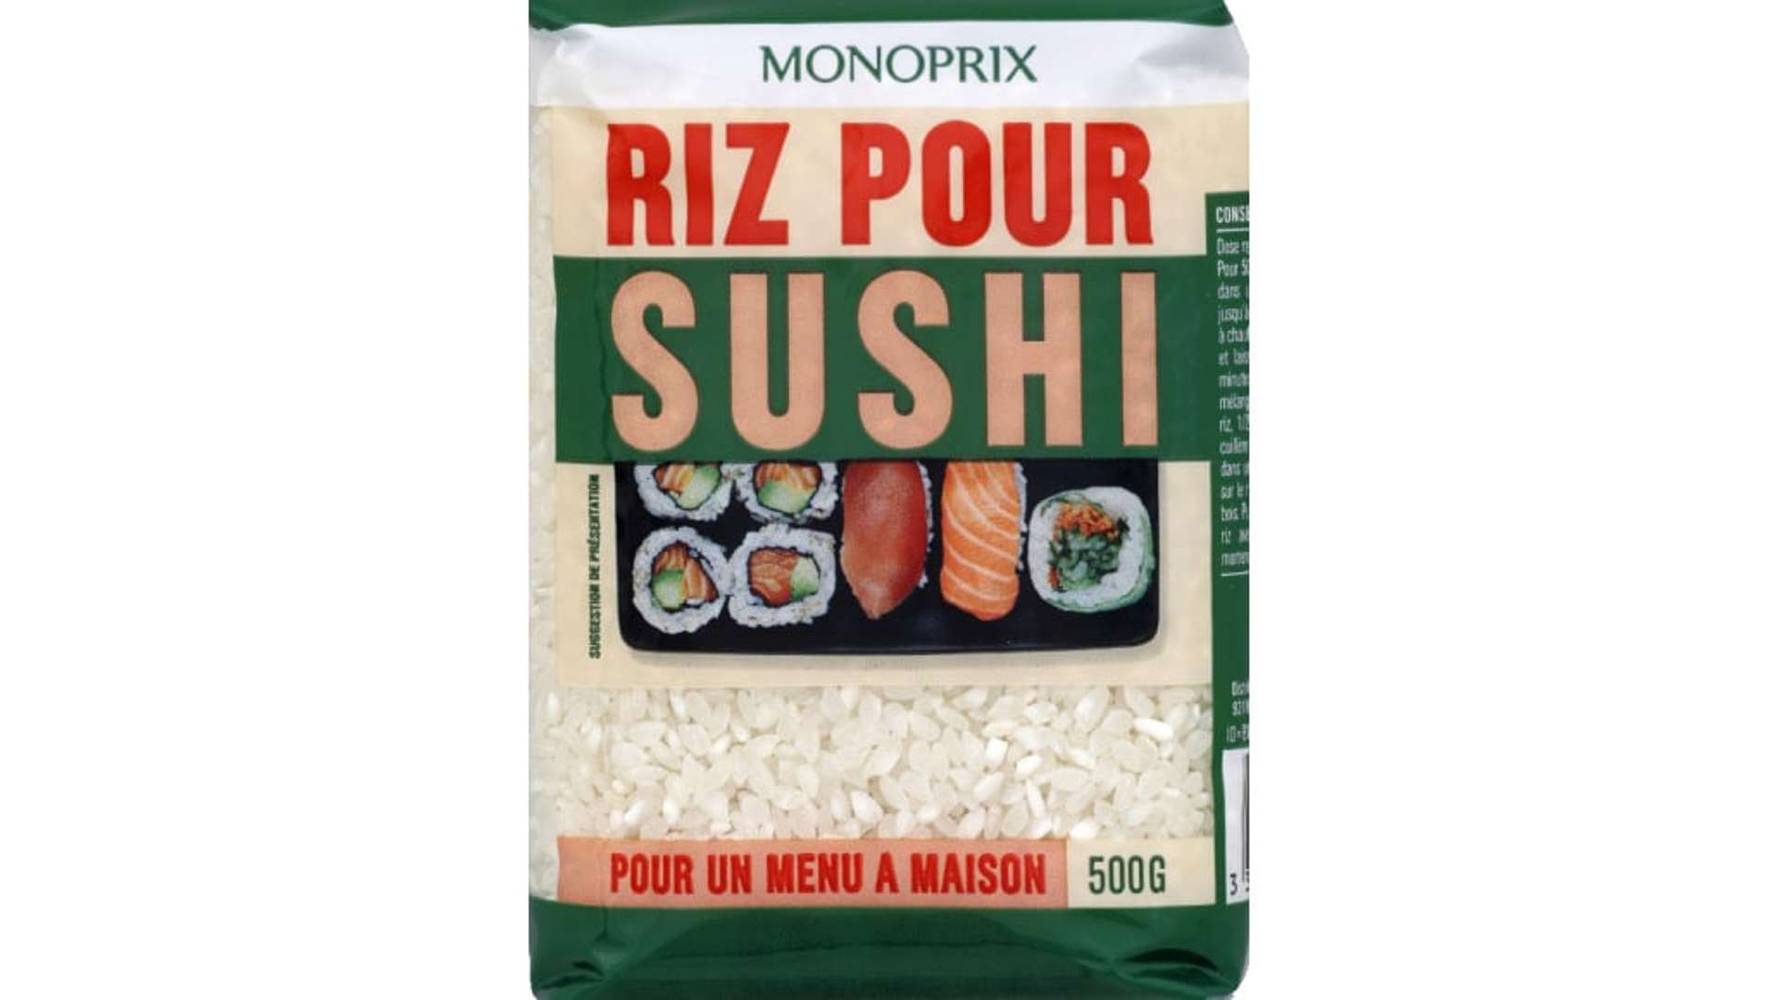 Monoprix Riz pour sushi Le paquet de 500 g